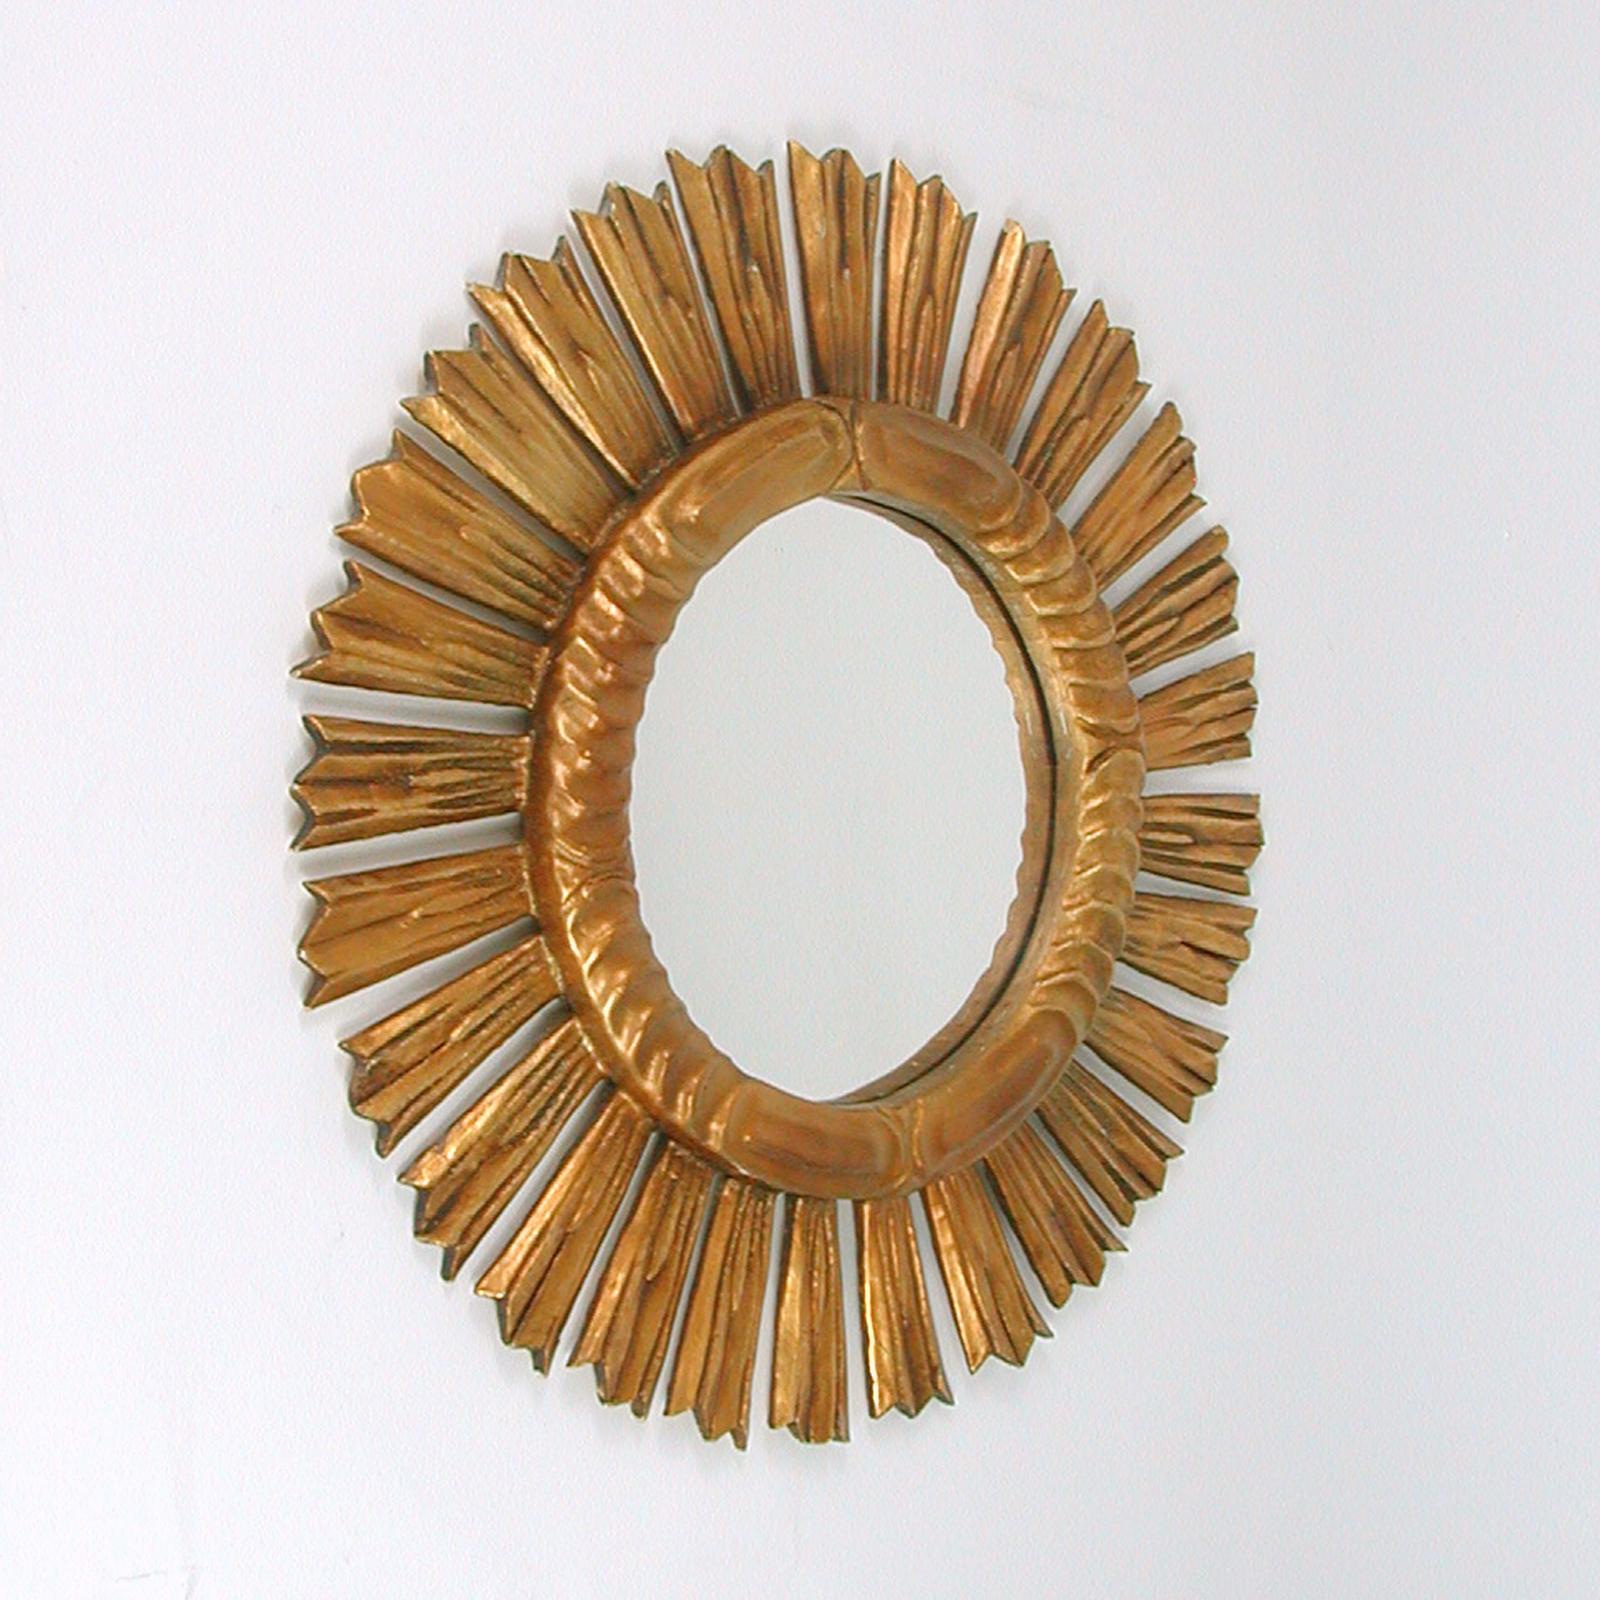 Ce miroir glamour en bois doré a été conçu et fabriqué en Espagne dans les années 1940 à 1950. Il est doté d'un cadre original en bois sculpté en forme de soleil et d'un miroir en verre. Le cadre est en très bon état vintage avec une belle patine